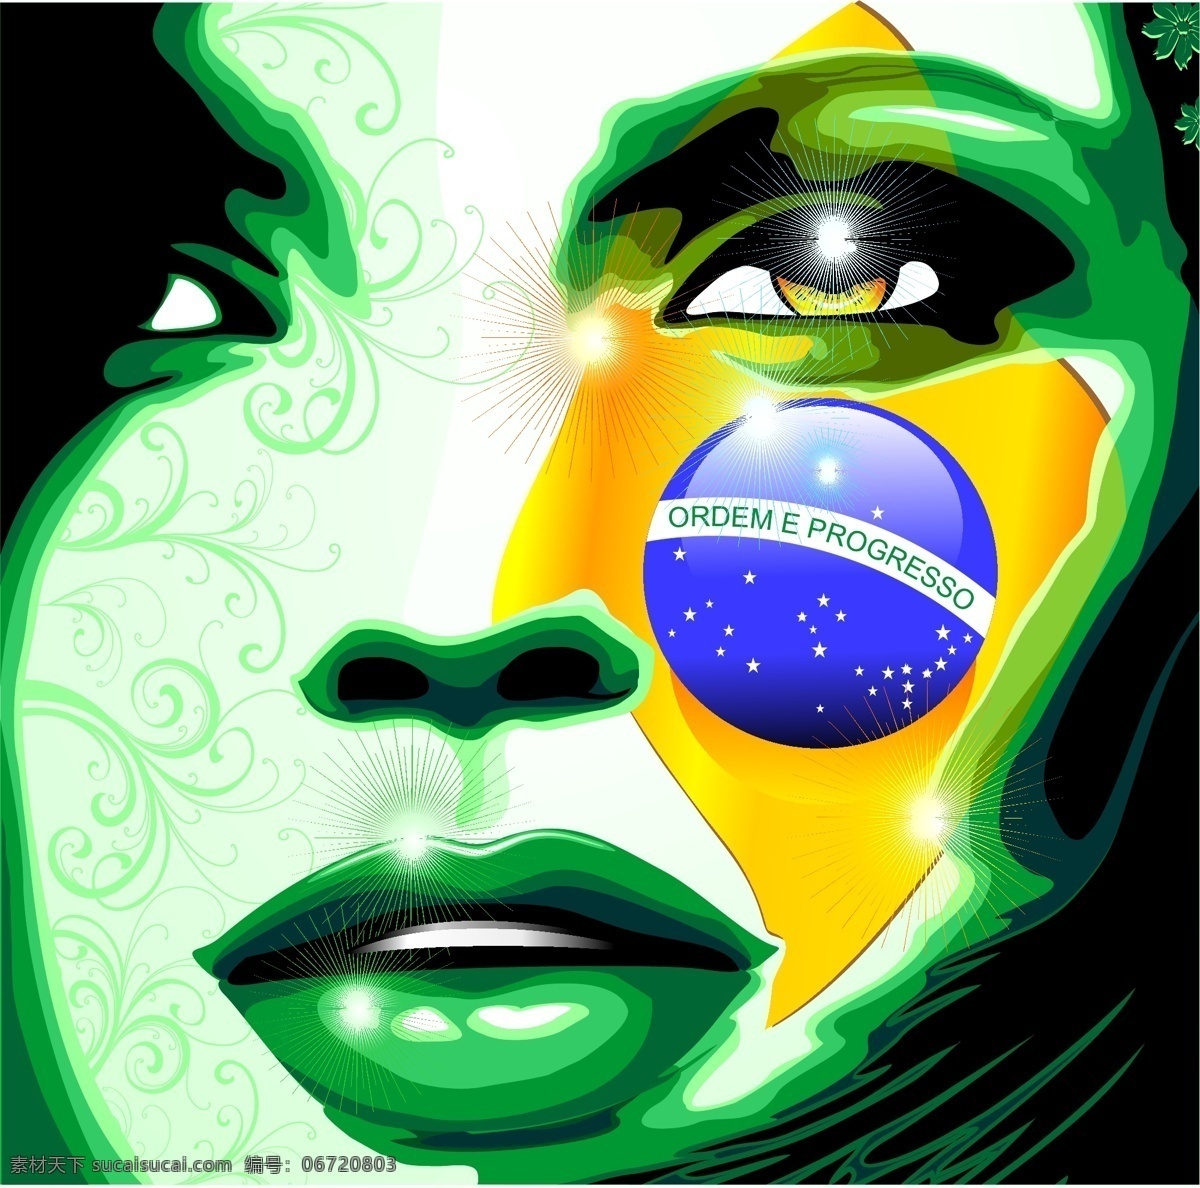 巴西美女 巴西国旗 巴西 巴西元素 桑巴风情 巴西足球 时尚背景 绚丽背景 背景素材 背景图案 巴西女人 女人脸 女性肖像 矢量背景 背景设计 抽象背景 抽象设计 卡通背景 矢量设计 卡通设计 艺术设计 巴西设计 矢量